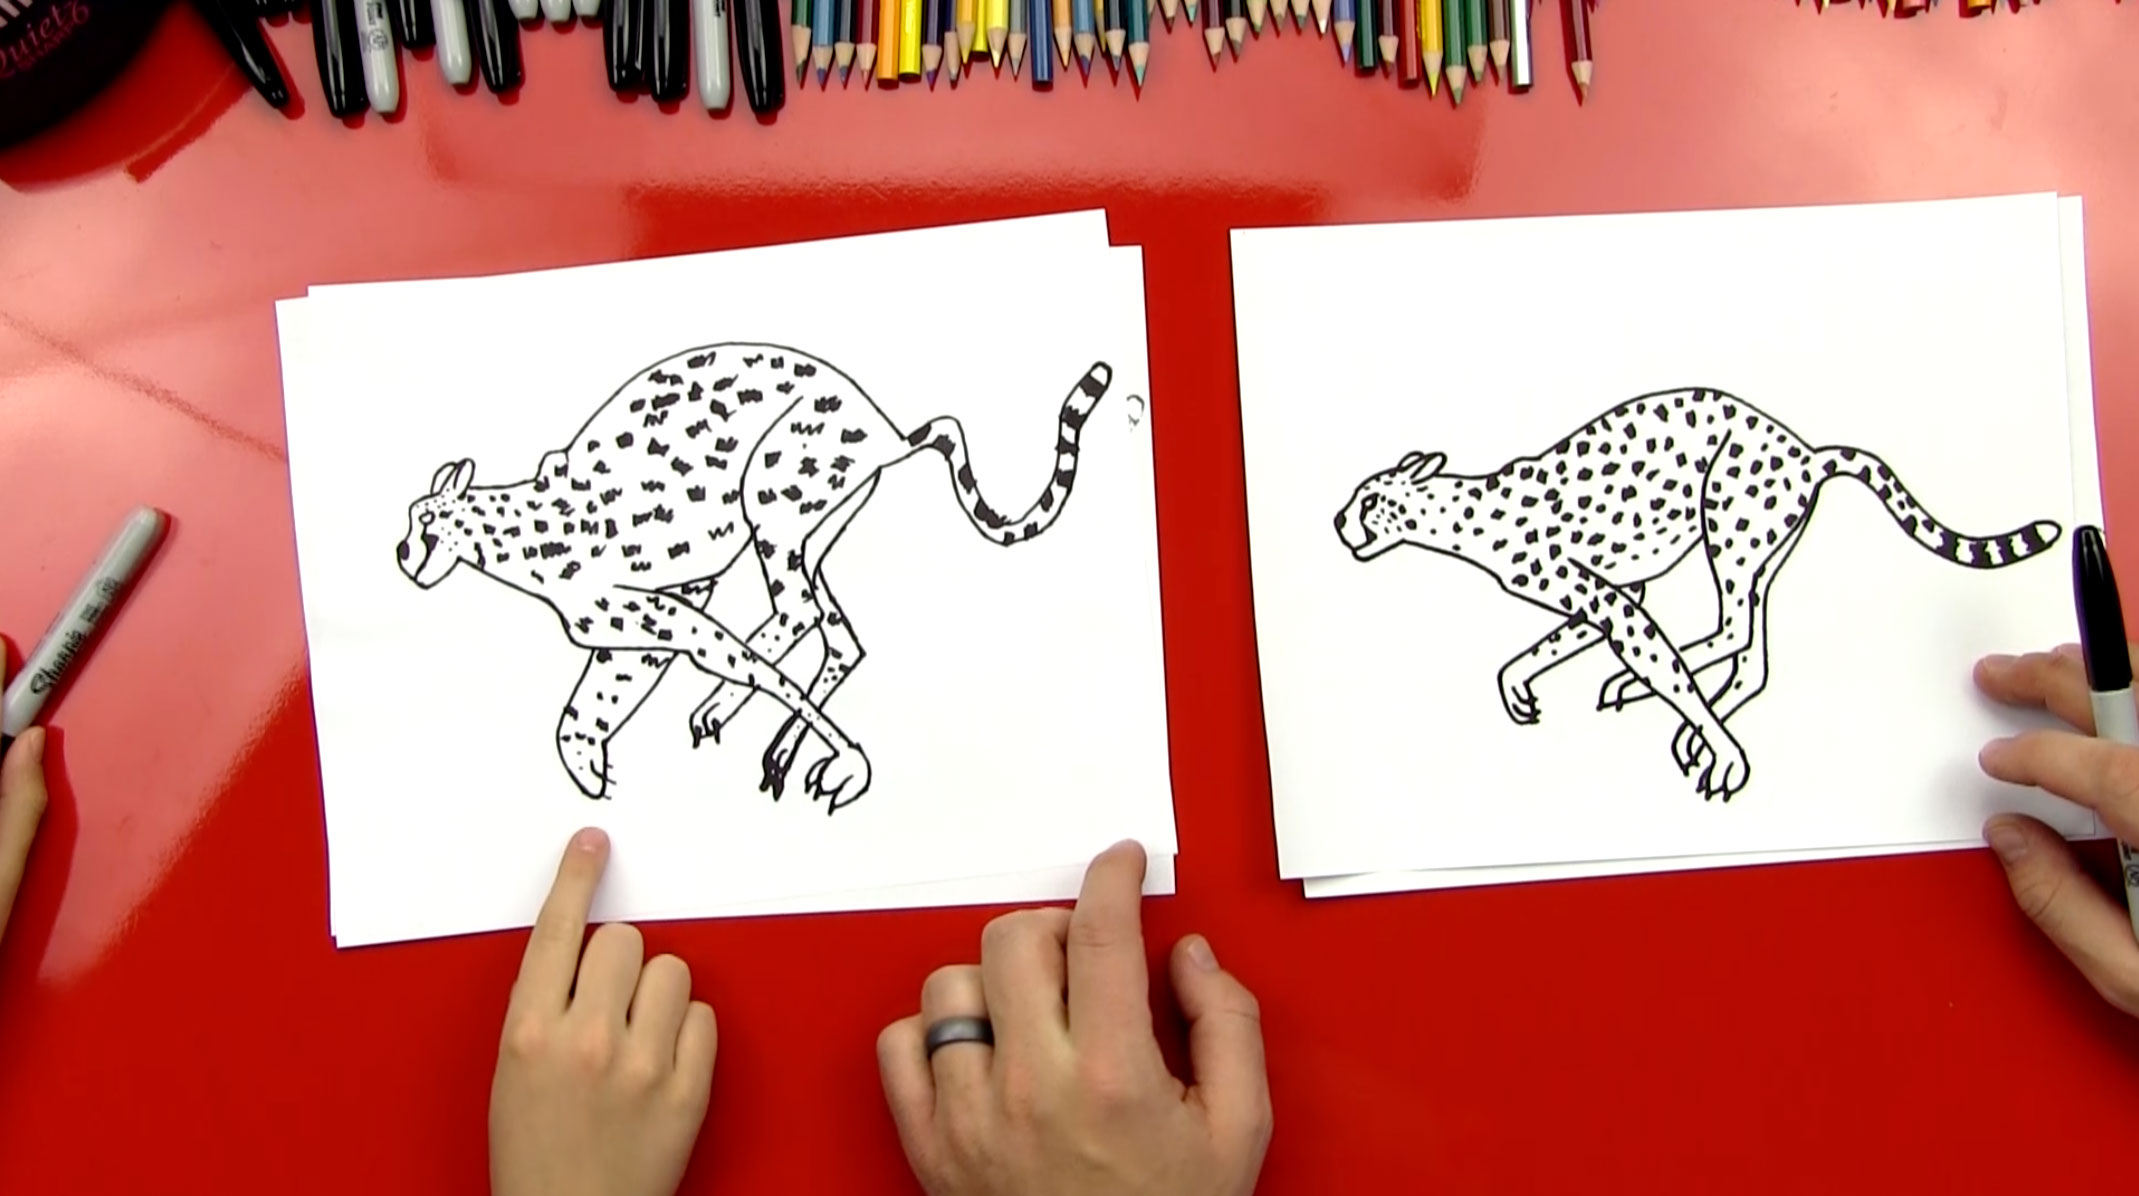 cheetah drawings for kids